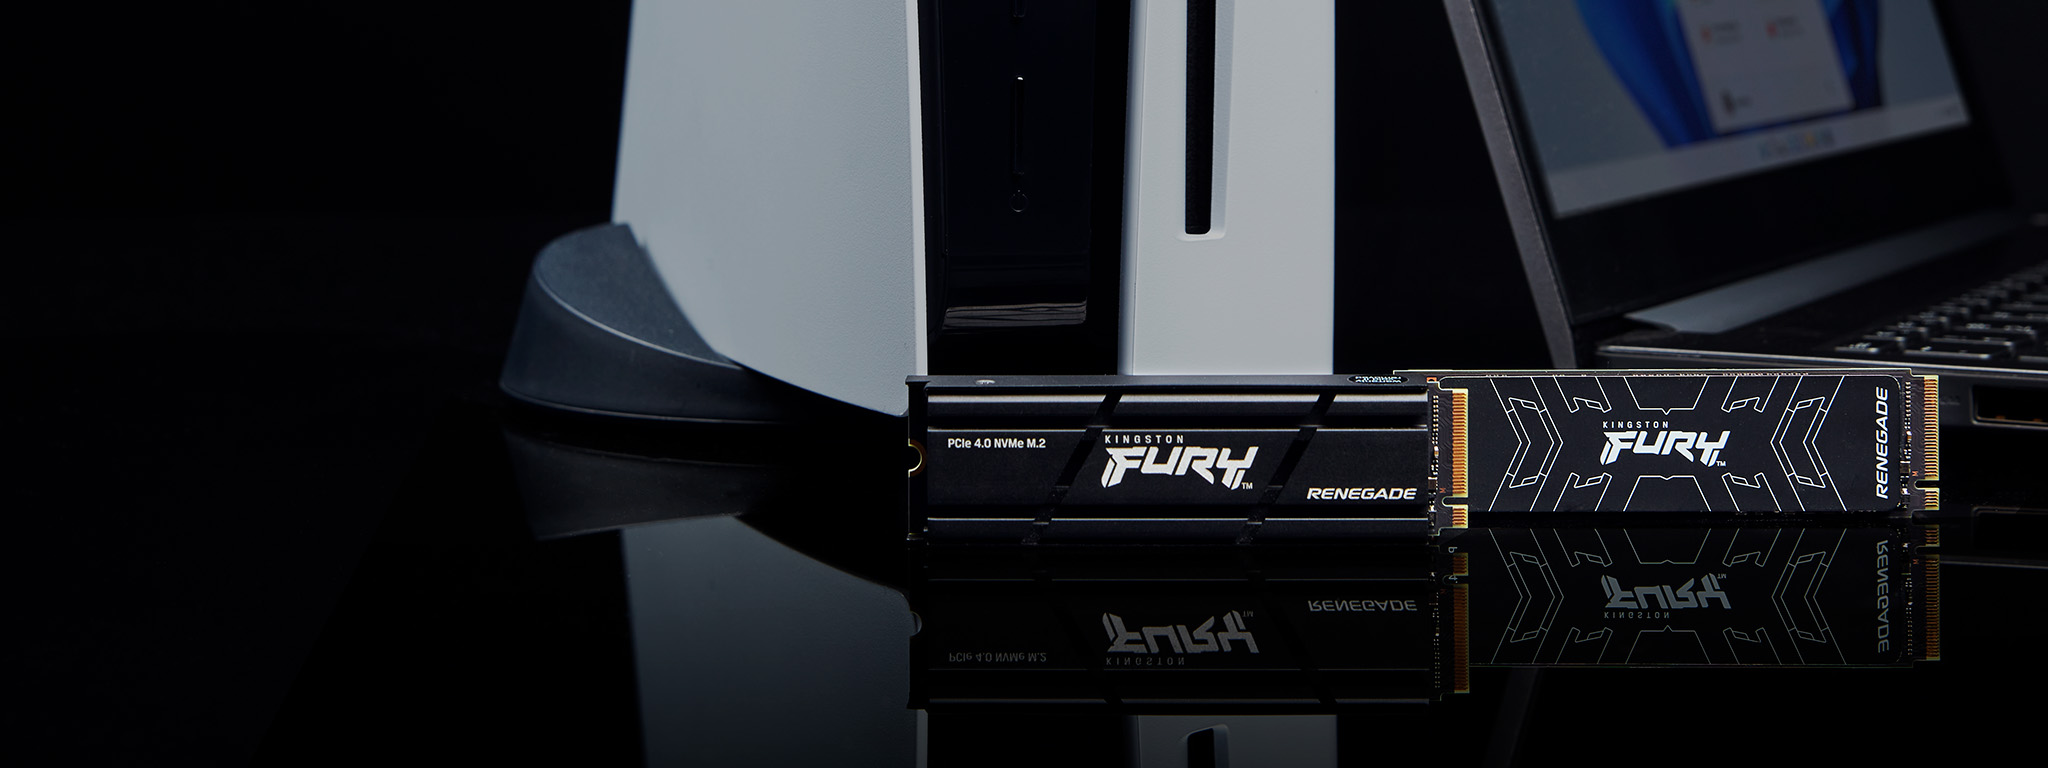 PS5 とノートパソコンの隣に置かれている 2 つの Kingston FURY Renegade SSD (ヒートシンク付きとヒートシンクなし) 。